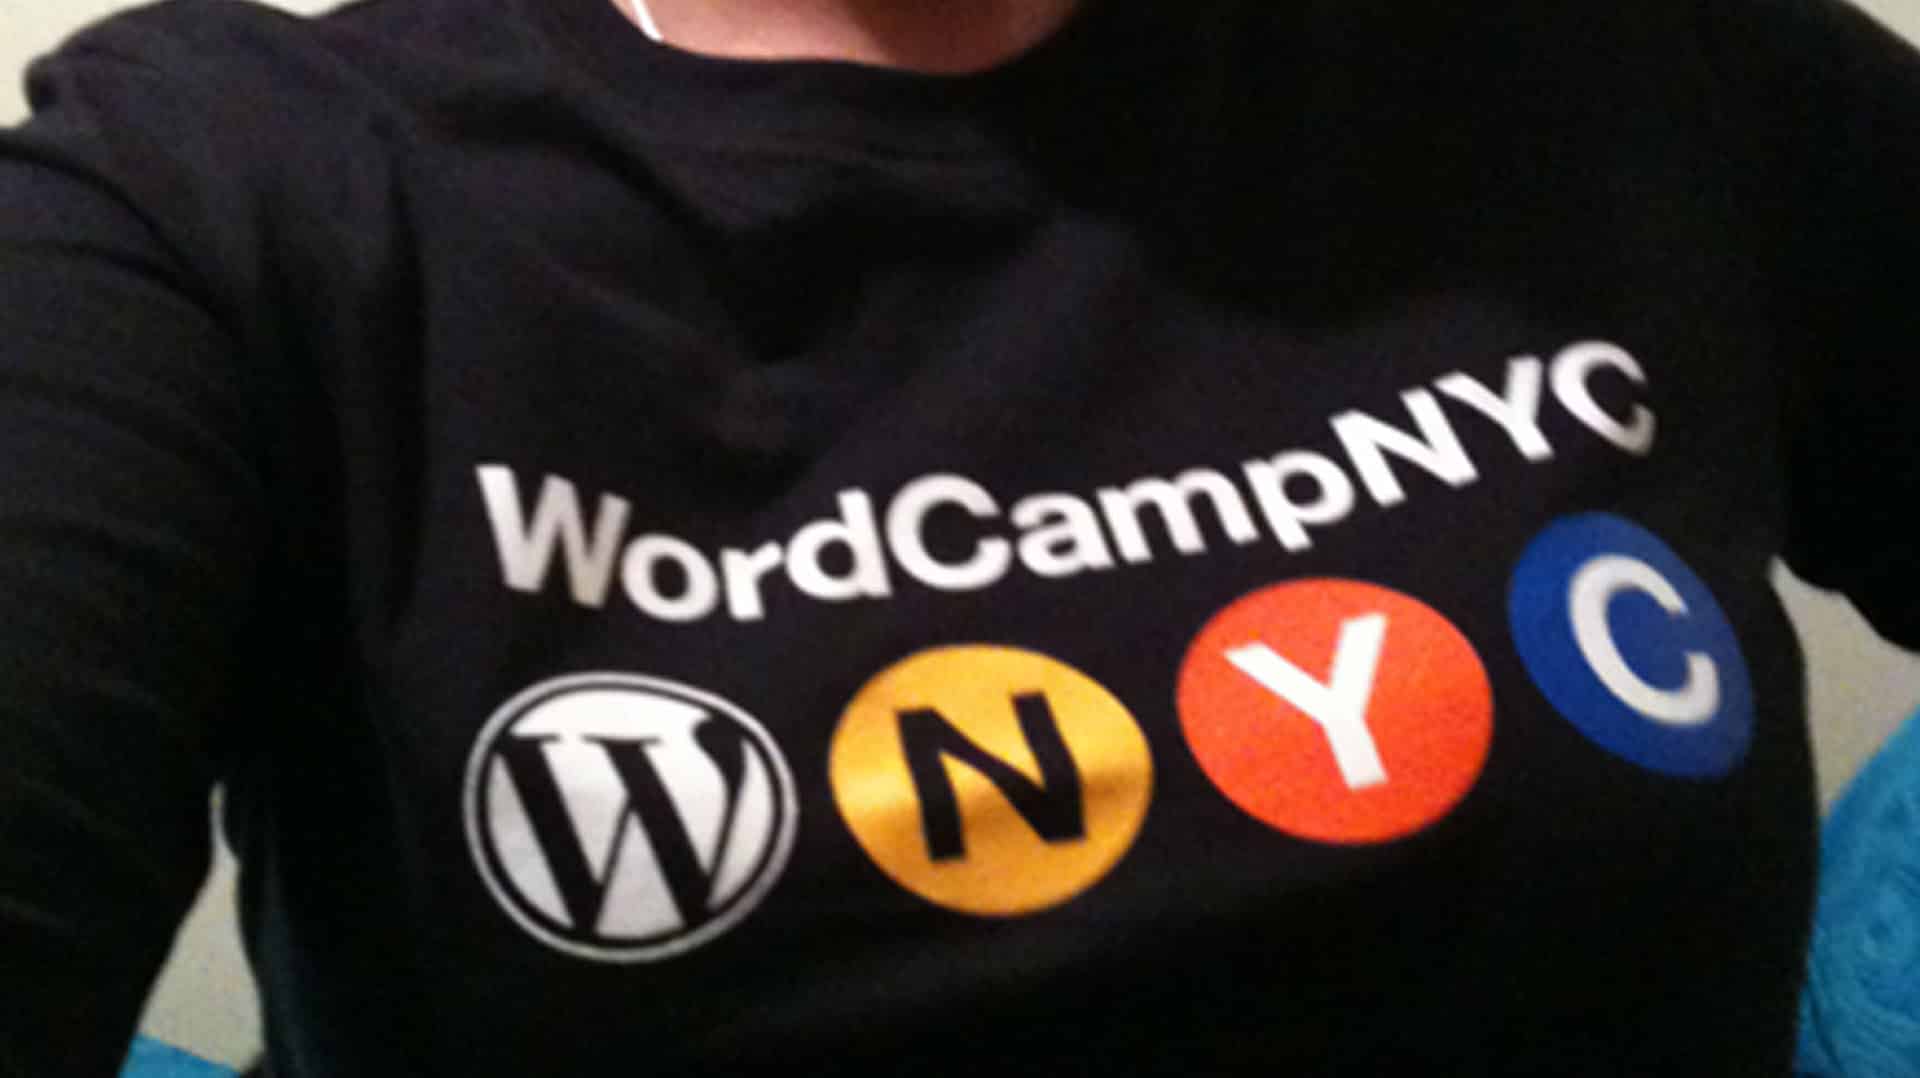 WordCamp New York 2010